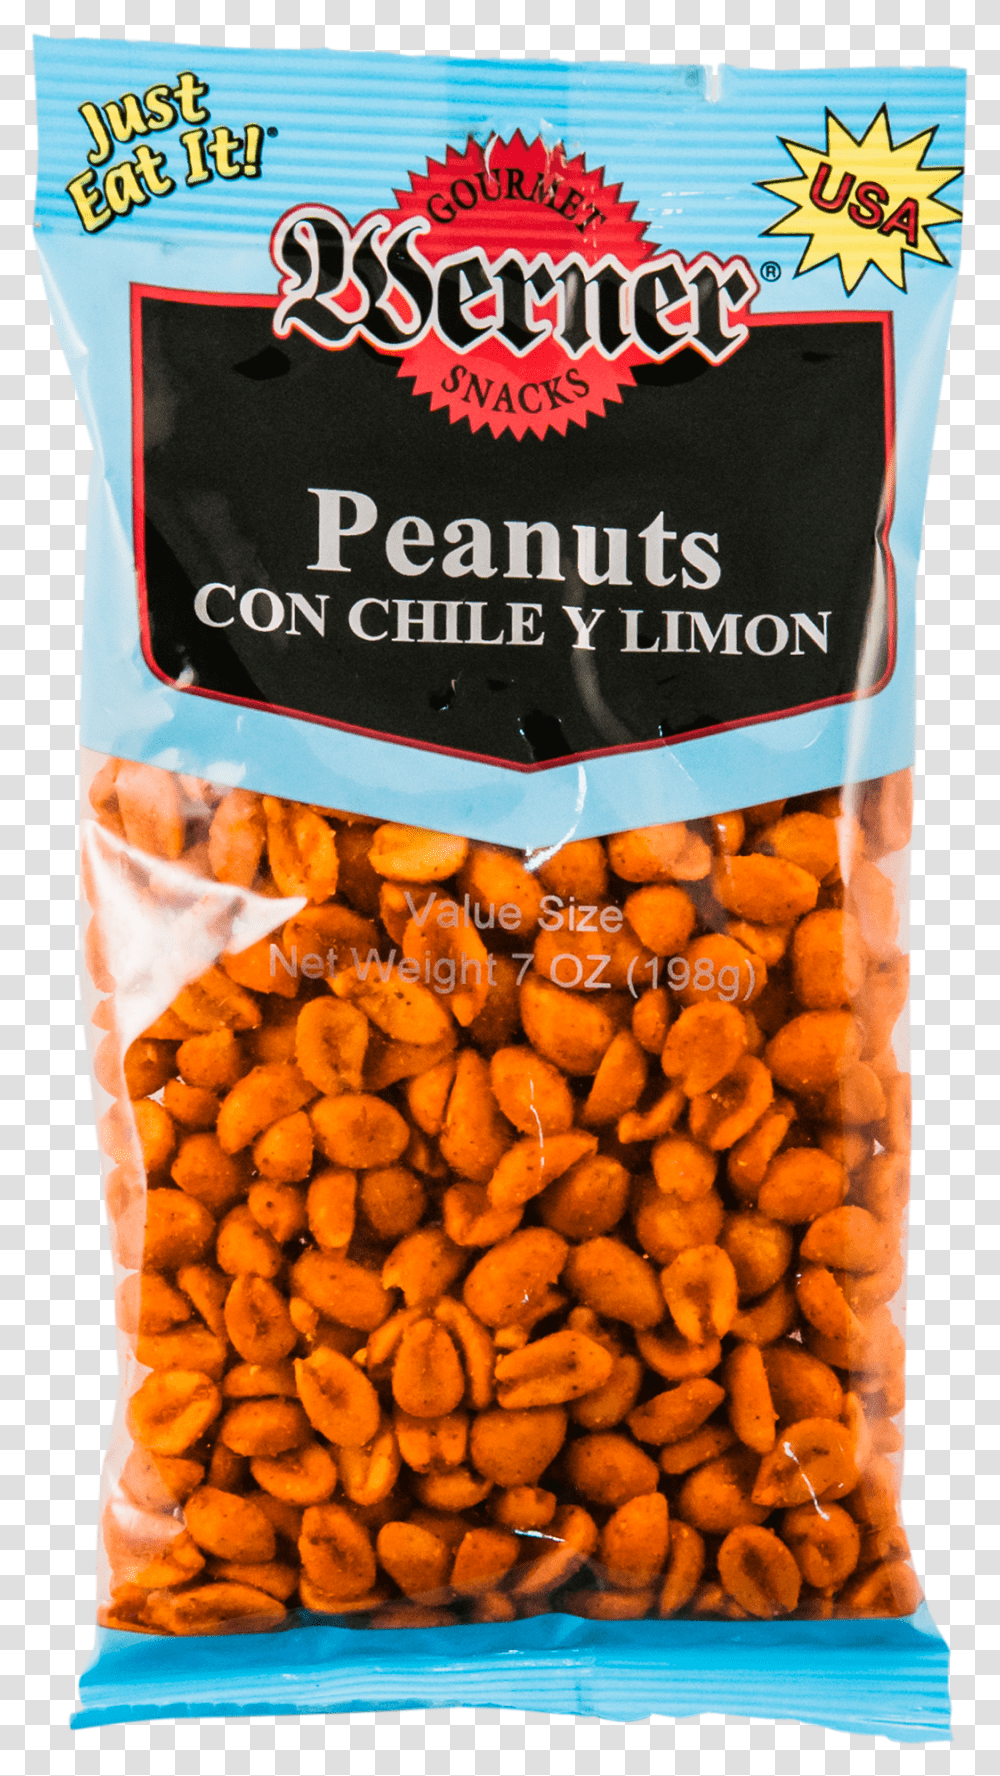 Peanuts Con Chile Y LimonClass Chile Y Limon Peanuts, Plant, Food, Vegetable, Fruit Transparent Png